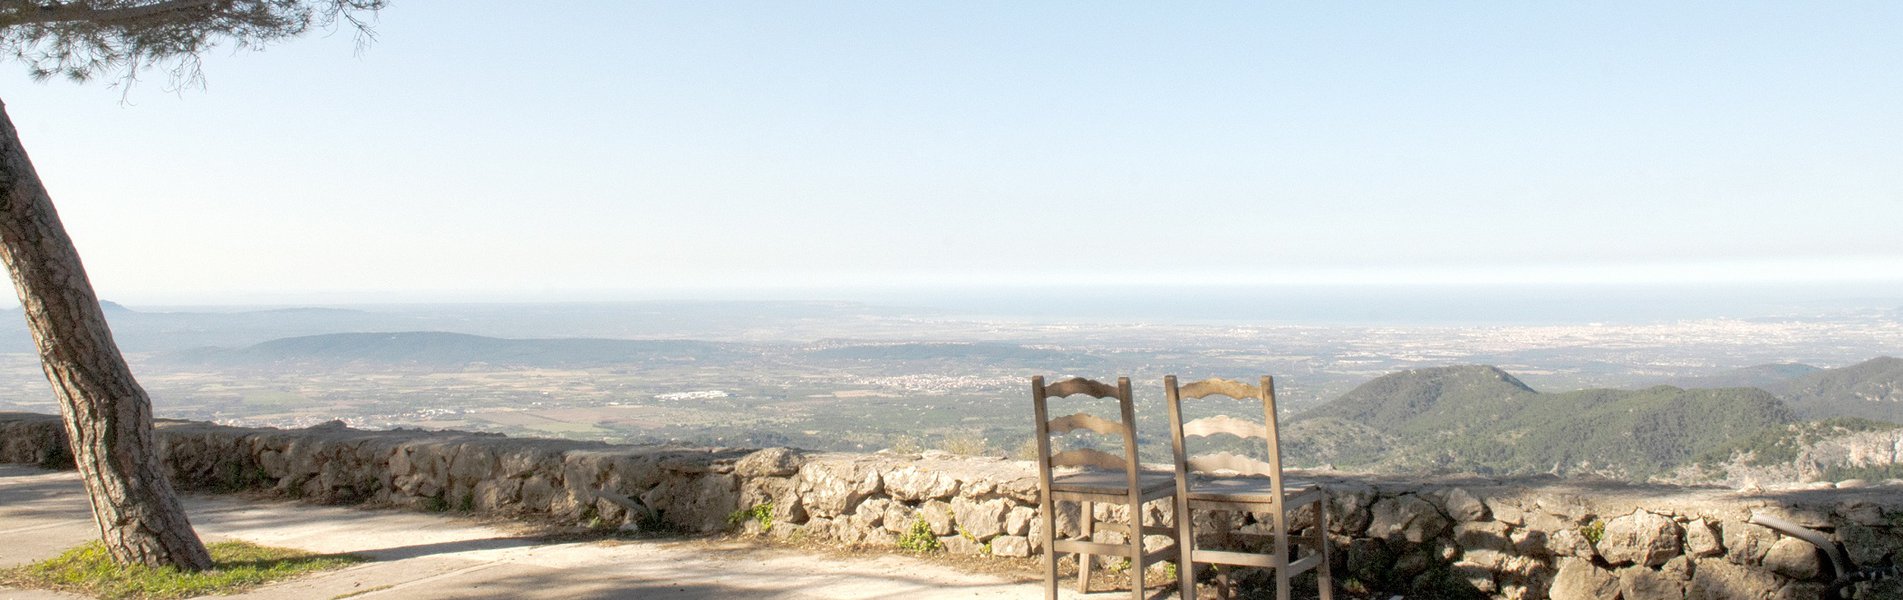 Ansichten von der Burg von Alaró